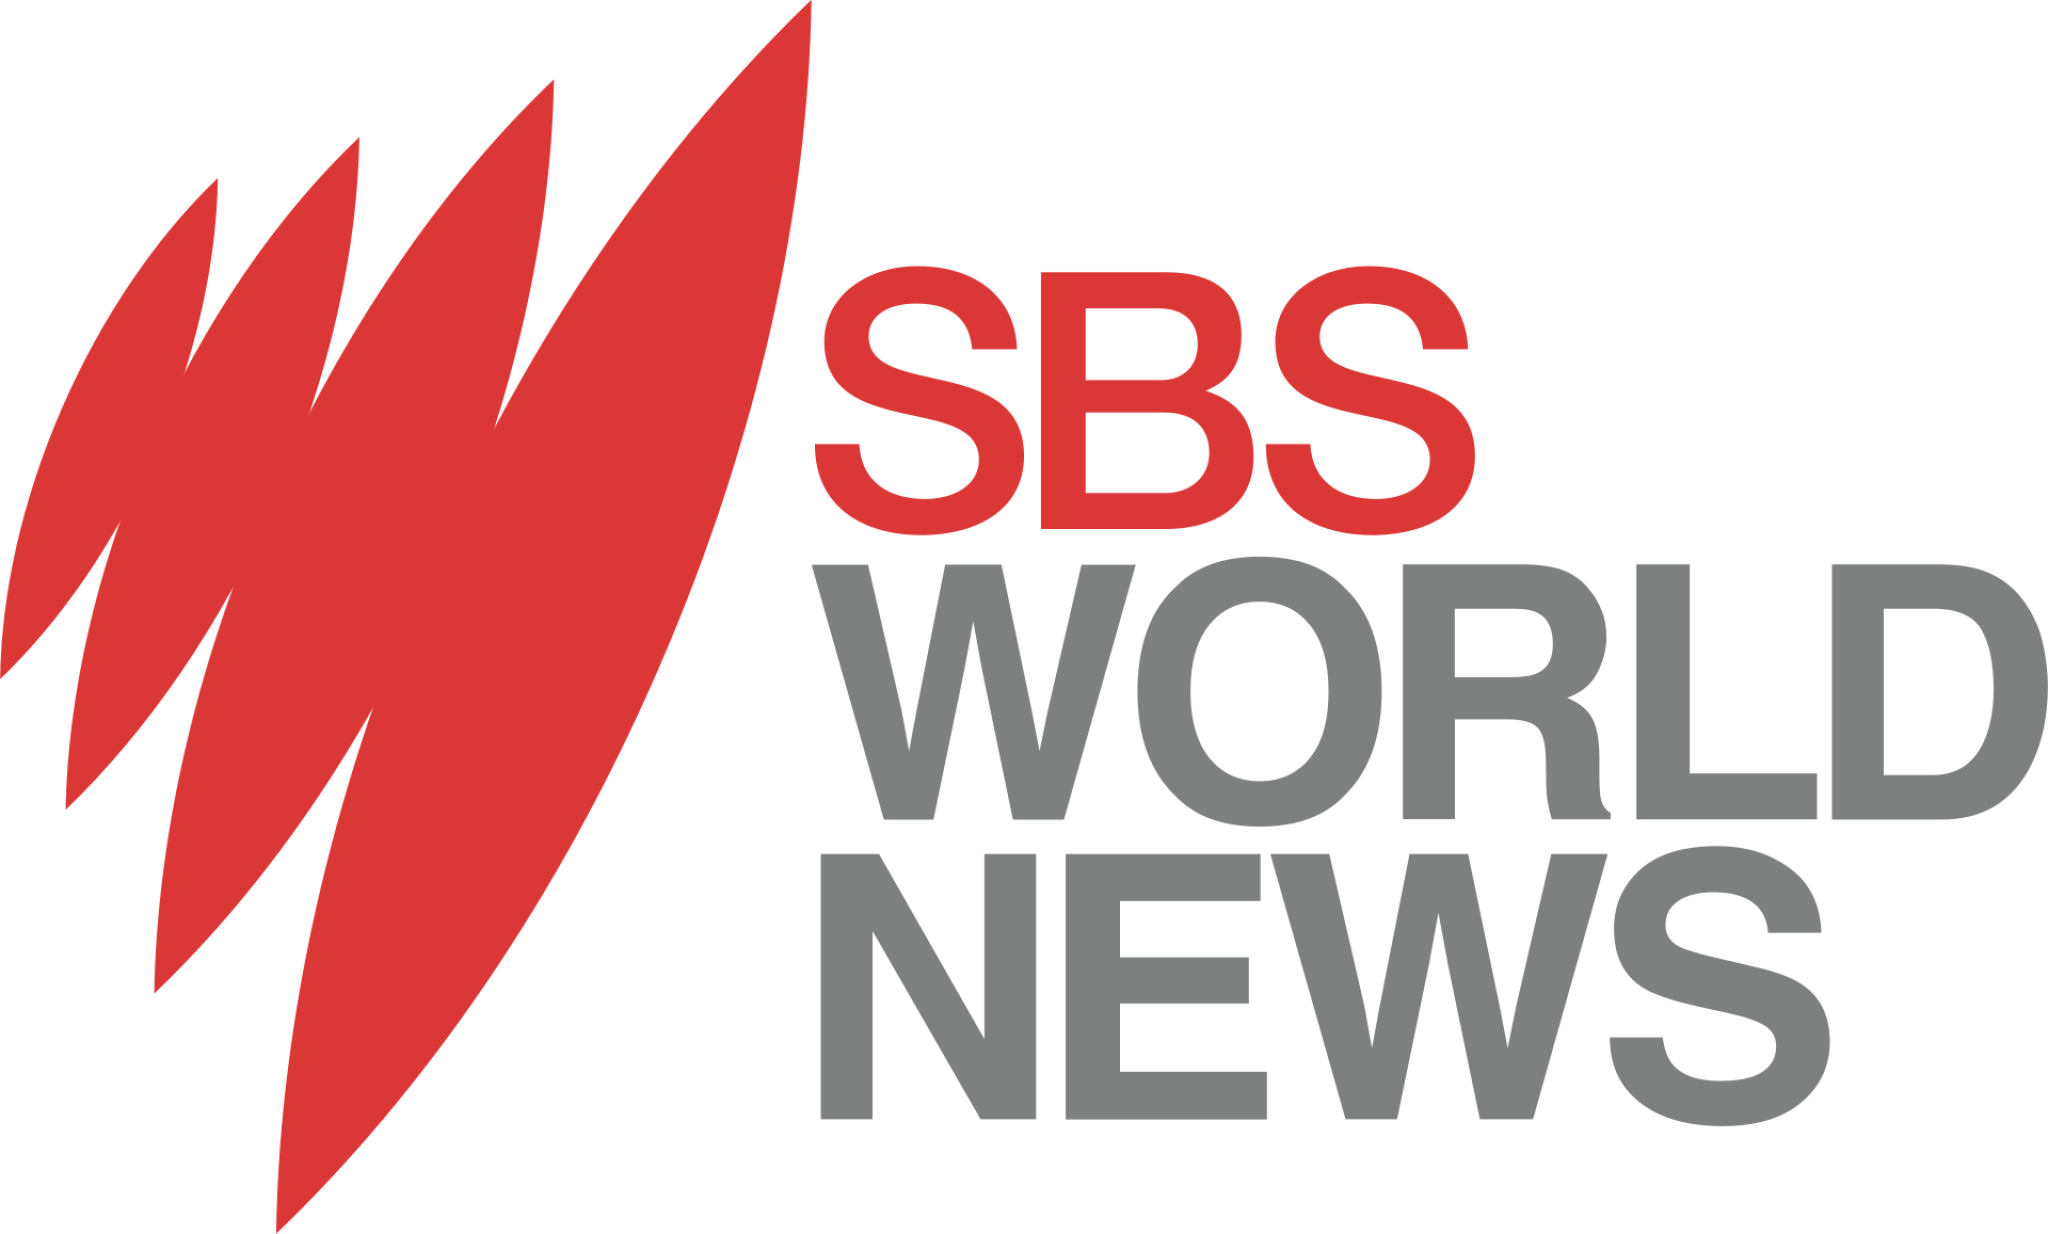 SBS News